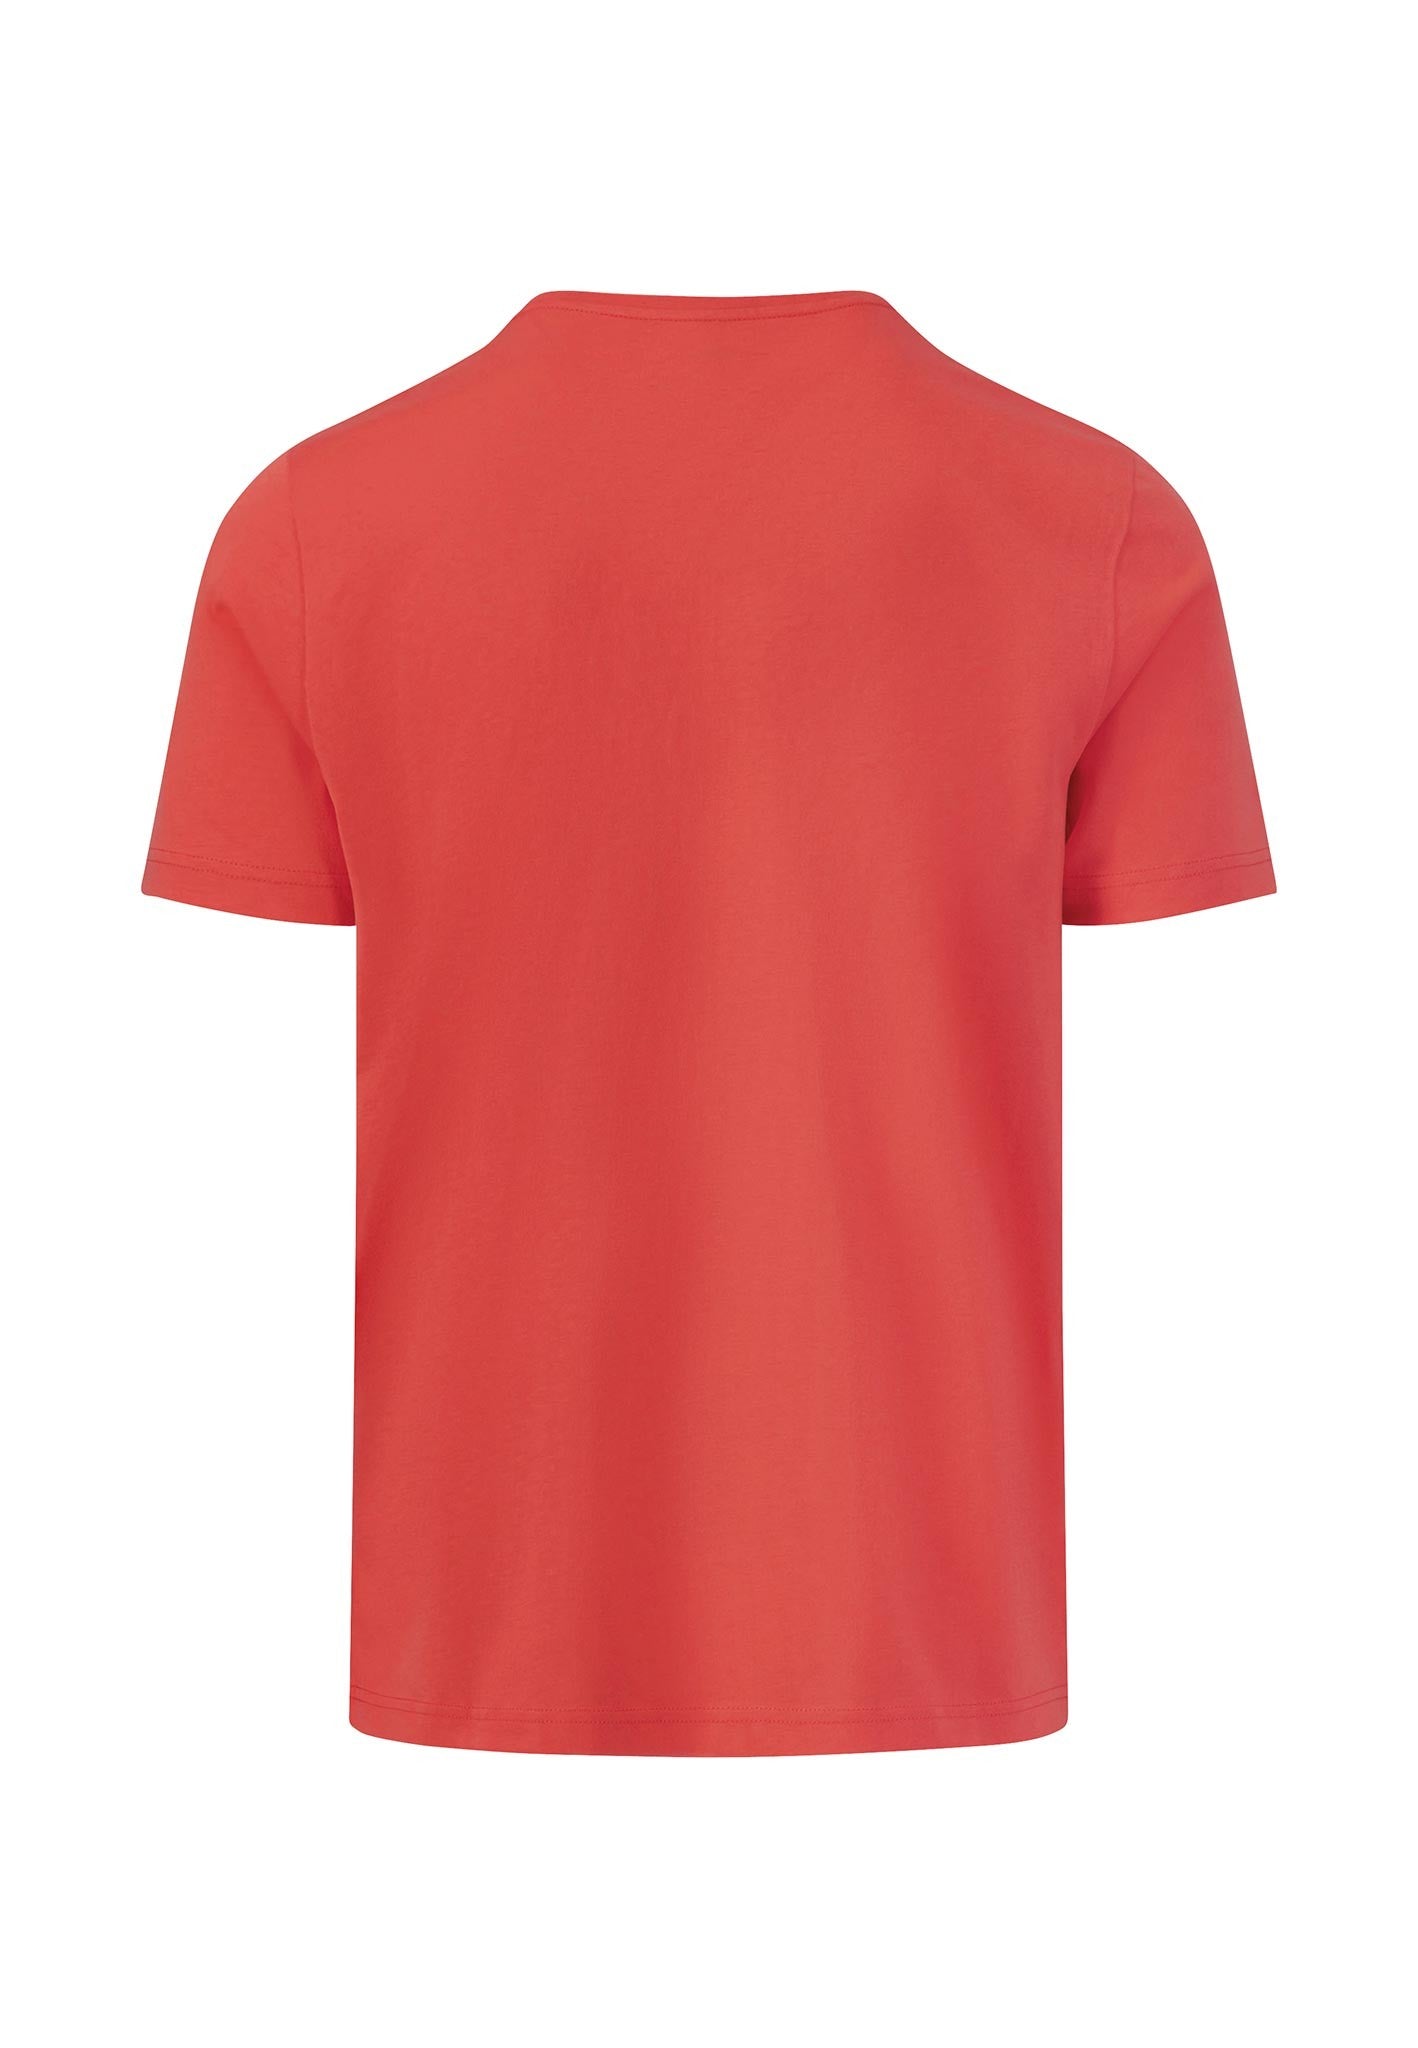 Fynch Hatton Superfine Cotton T-Shirt Red